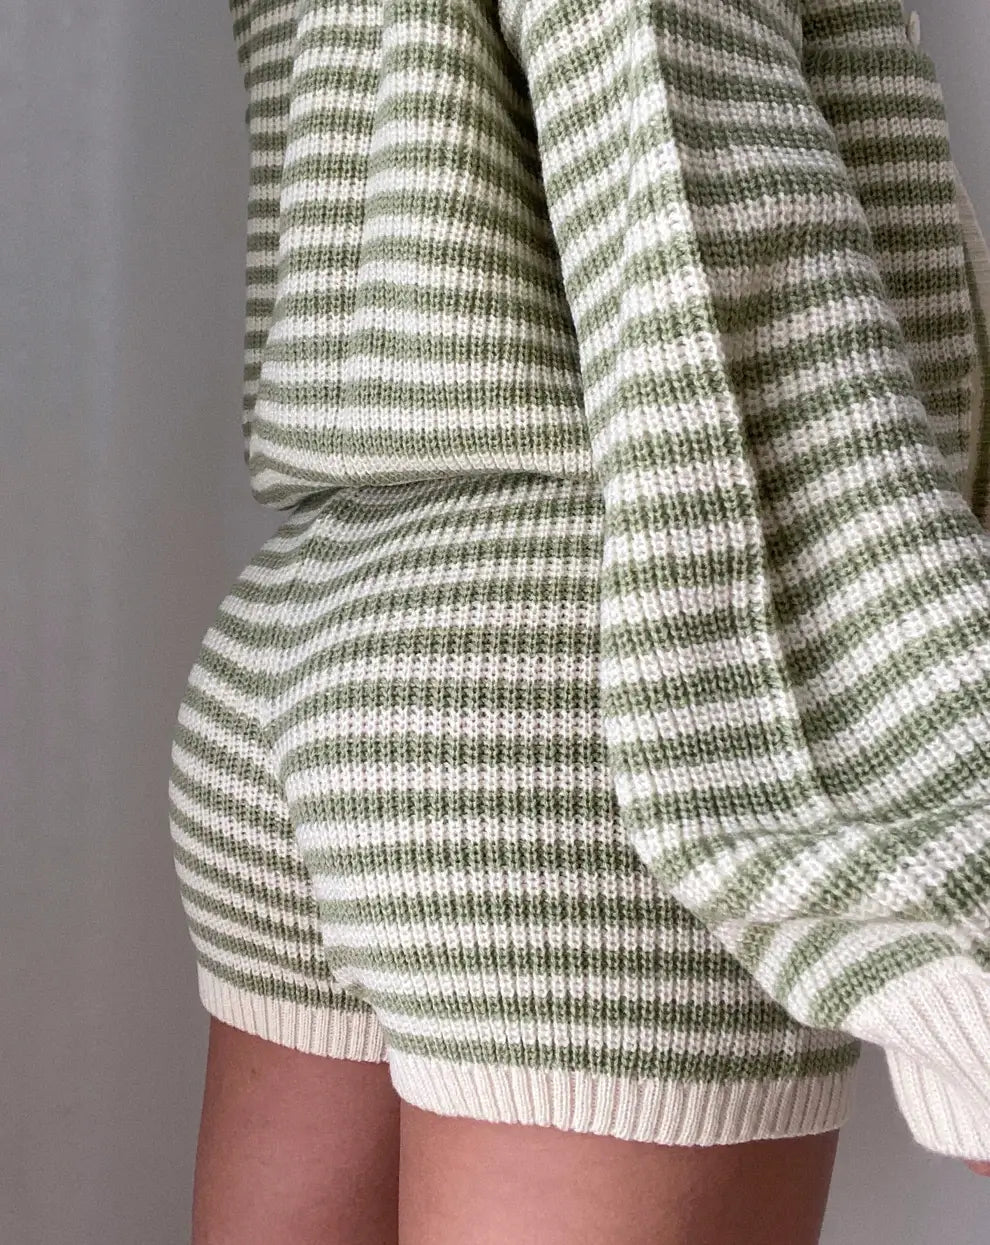 Anya knit shorts - Stripped green